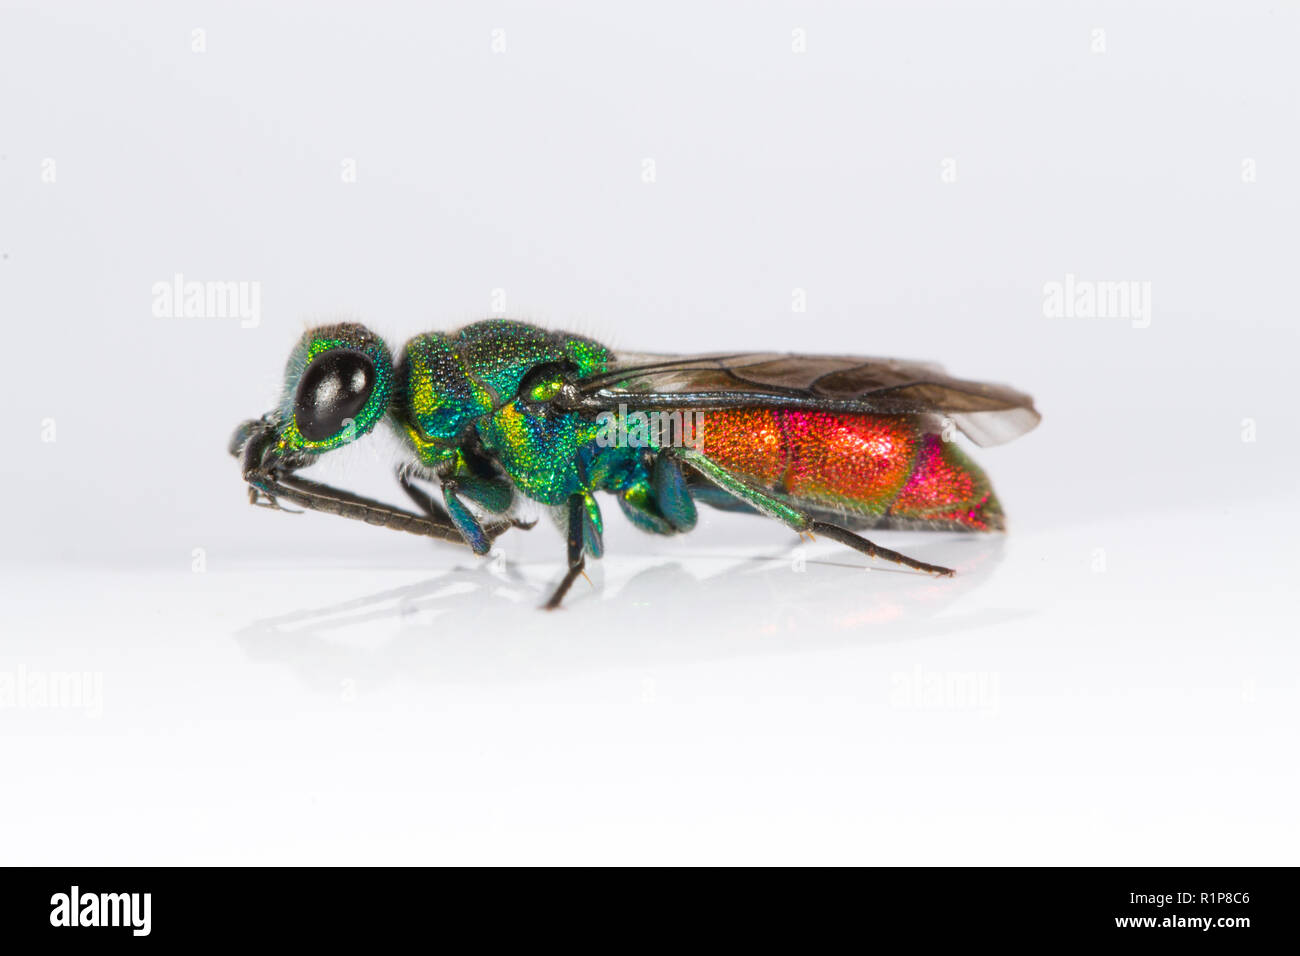 Ruby-tailed wasp (Chrysis sp.) femelle adulte. Insecte photographié sur un fond blanc tout en nettoyant son antaennae. Powys, Pays de Galles. De juin. Banque D'Images